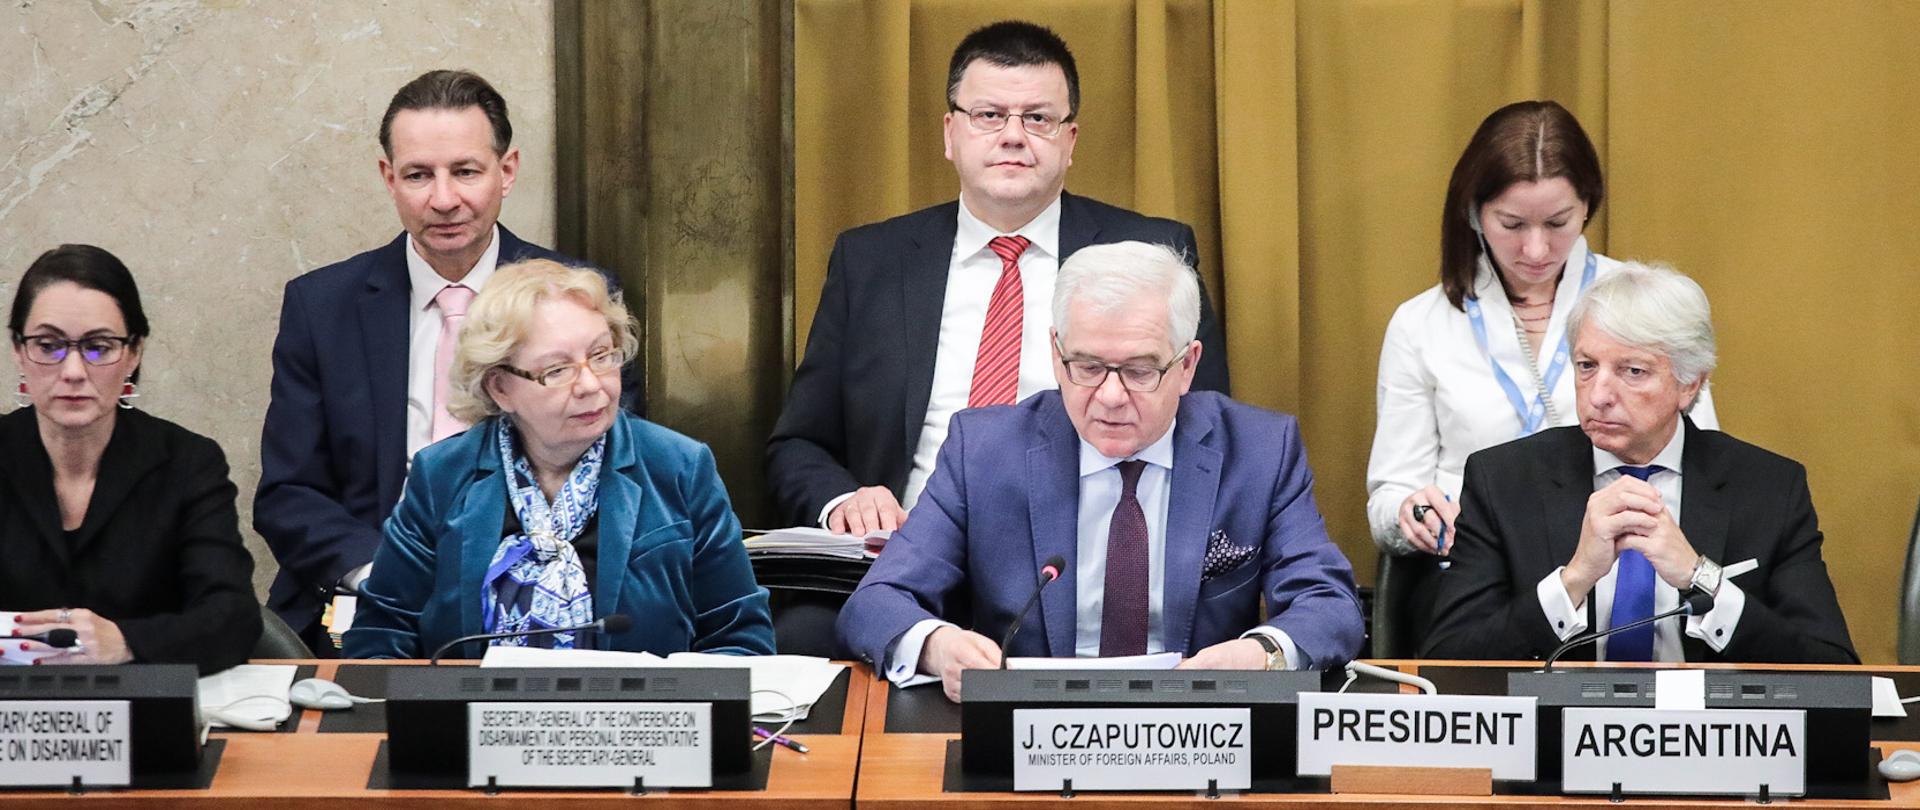 Minister J. Czaputowicz Geneva 2020